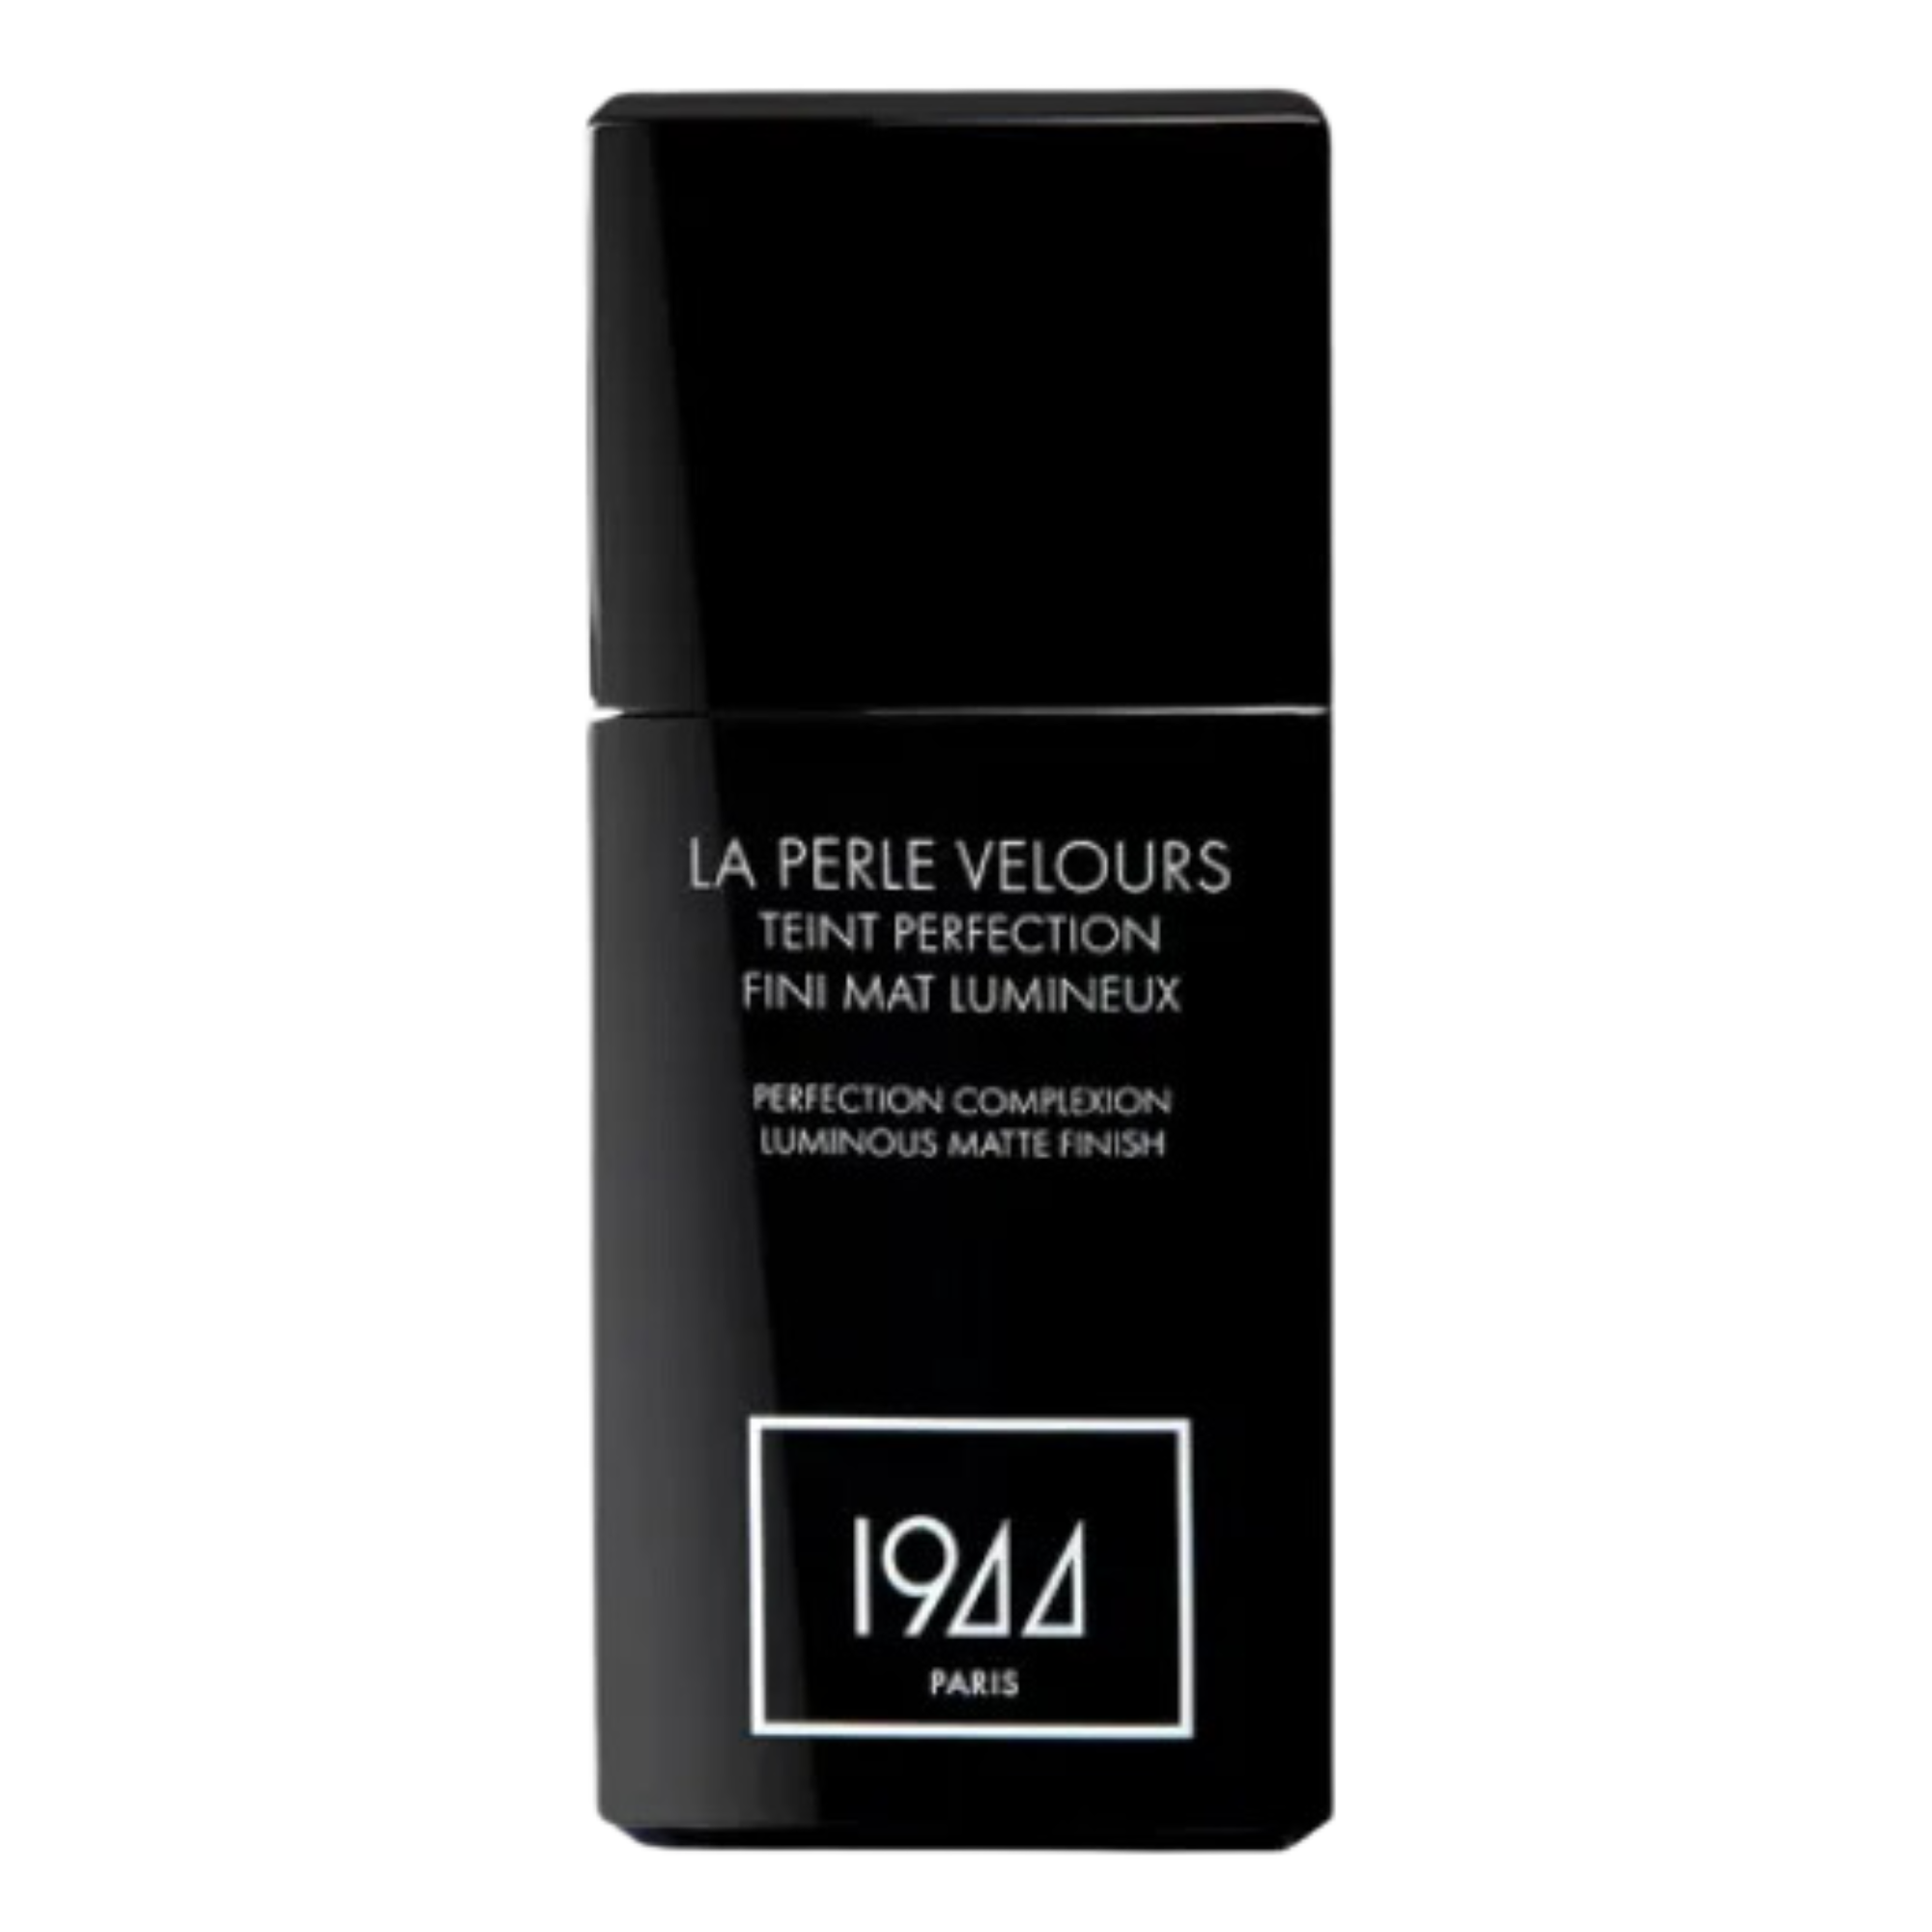 Тональный крем для лица ft202 бежевый 1944 Paris La Perle Velours, 30 мл